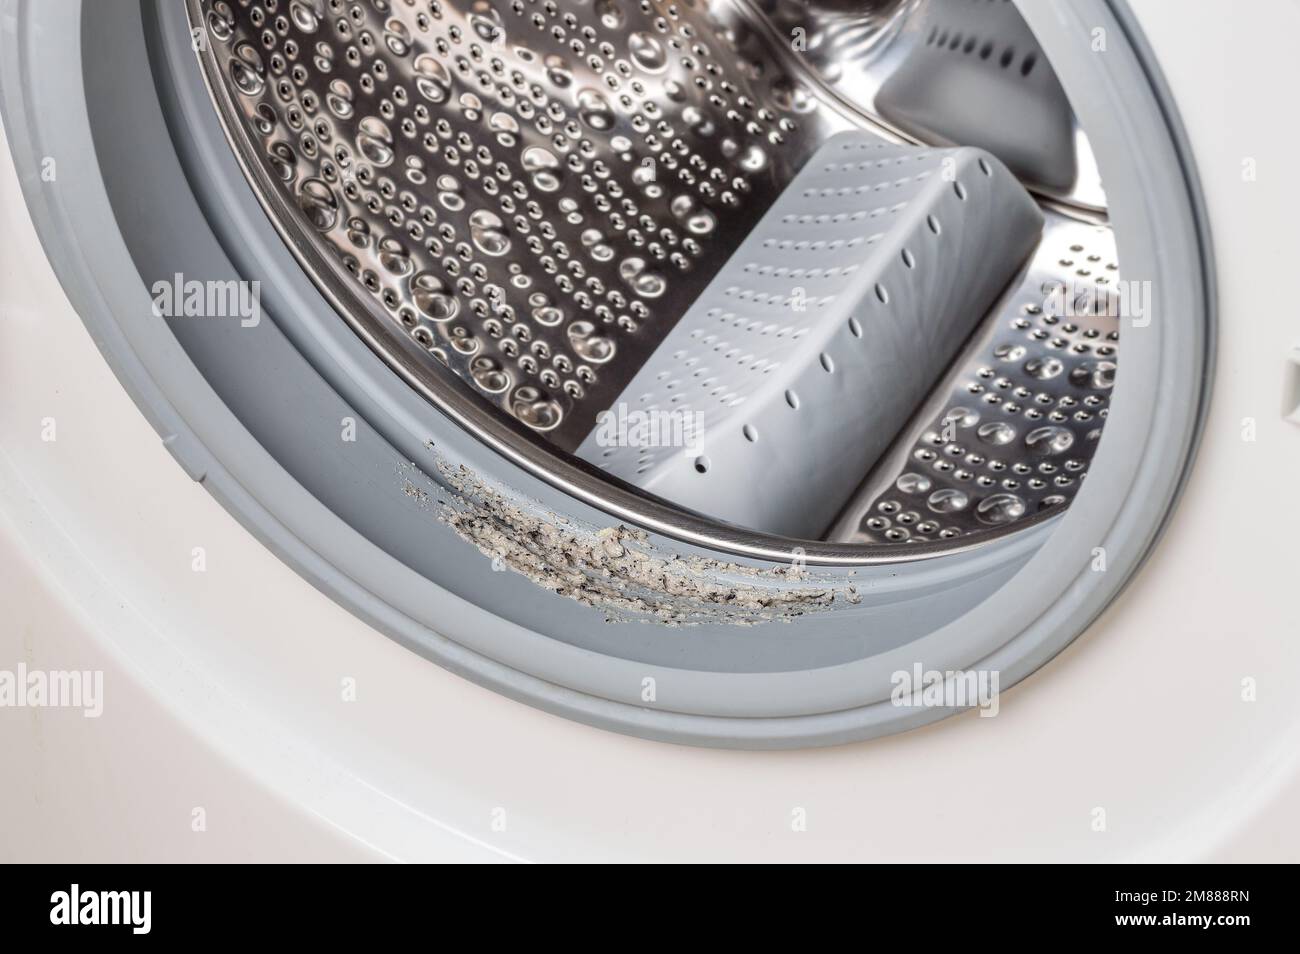 Schmutzige schimmelige Waschmaschine, die Gummi und Trommel aus der Nähe  versiegelt. Schimmel, Schmutz und Kalk in der Waschmaschine.  Haushaltsgeräte regelmäßige Wartung Stockfotografie - Alamy